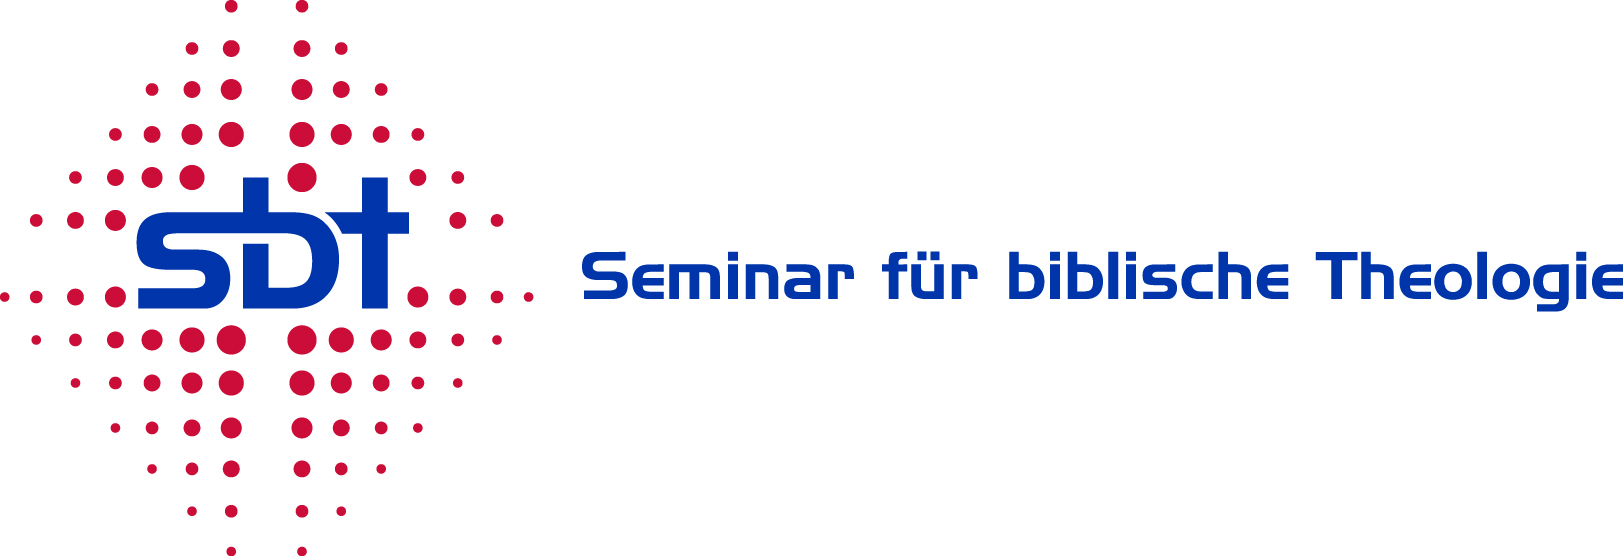 Seminar für biblische Theologie